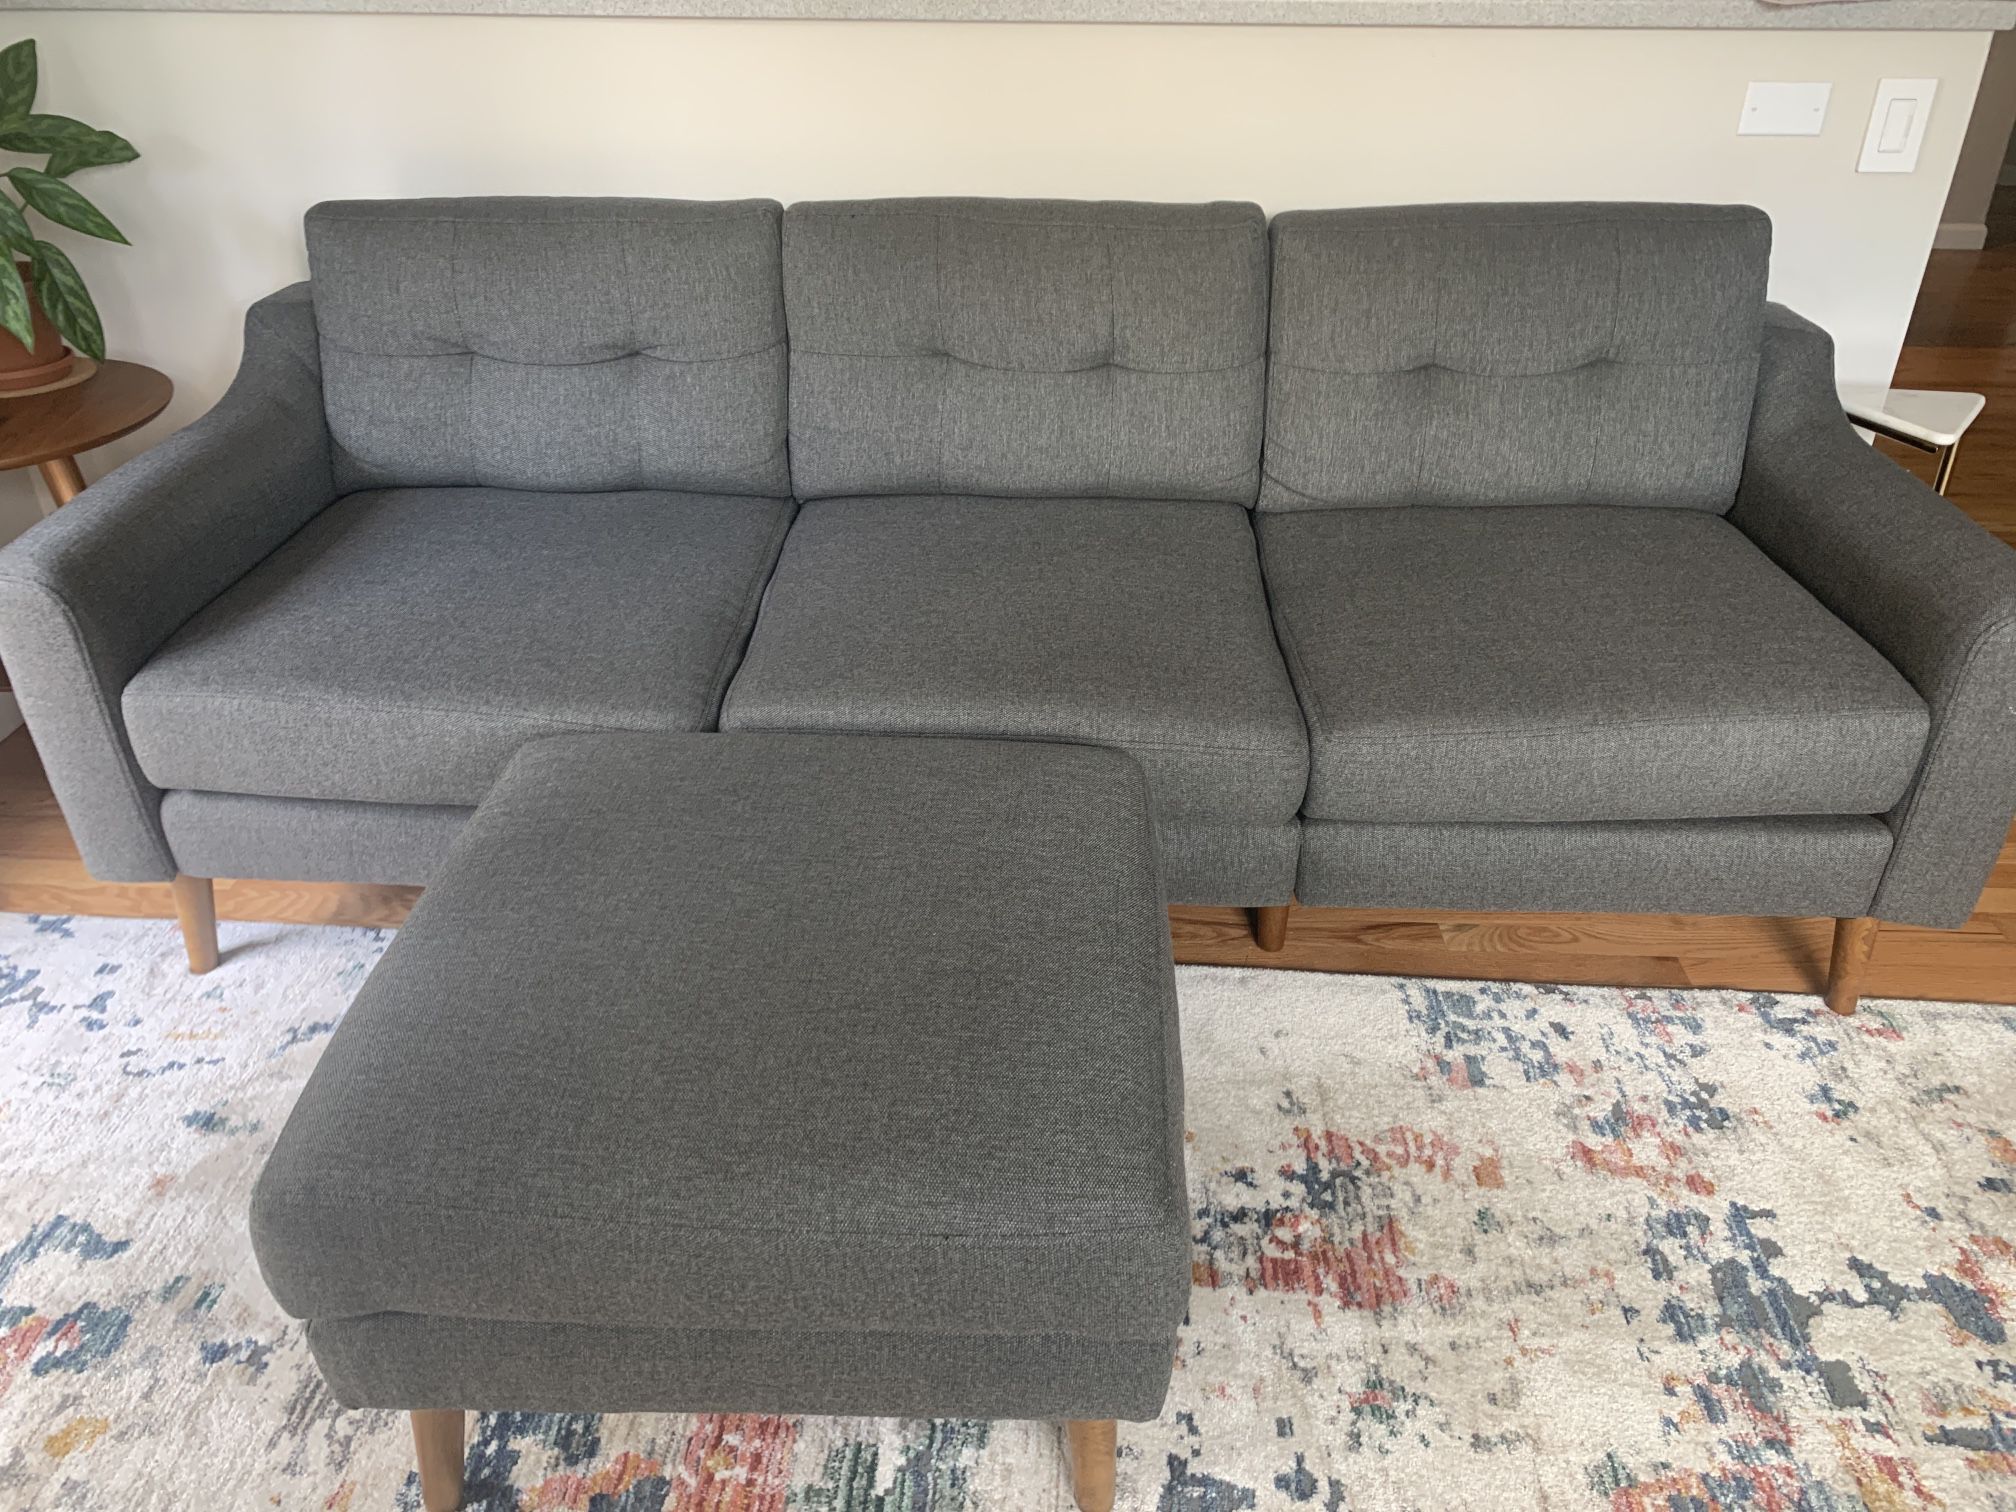 Sofa and Ottoman 